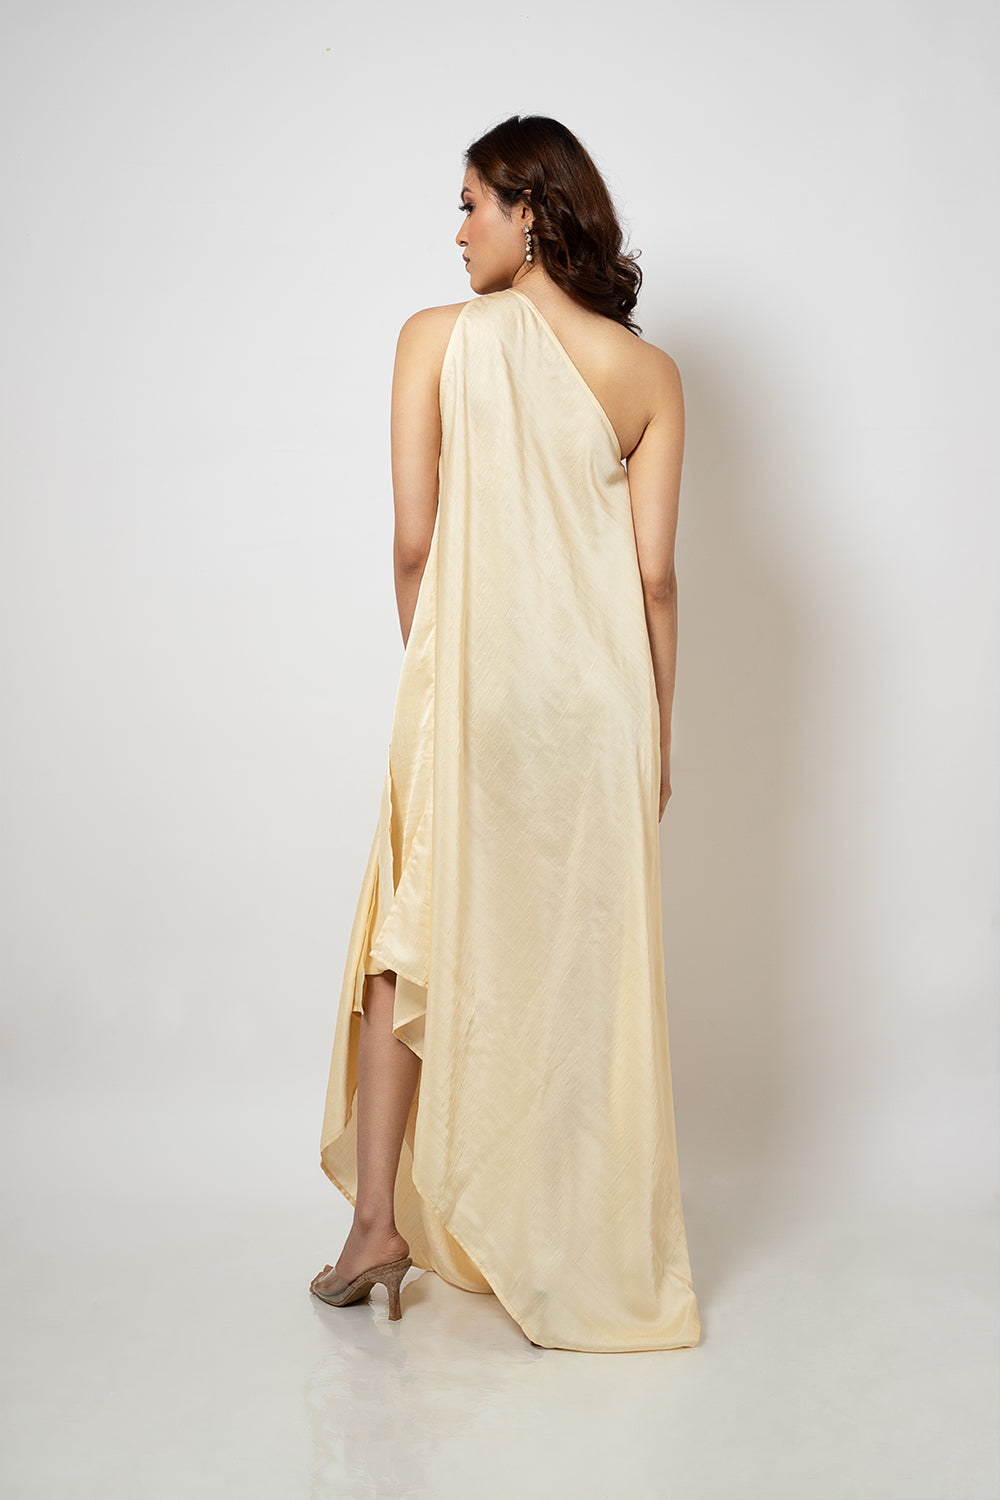 3. A zero waste one shoulder silk blend off white dress